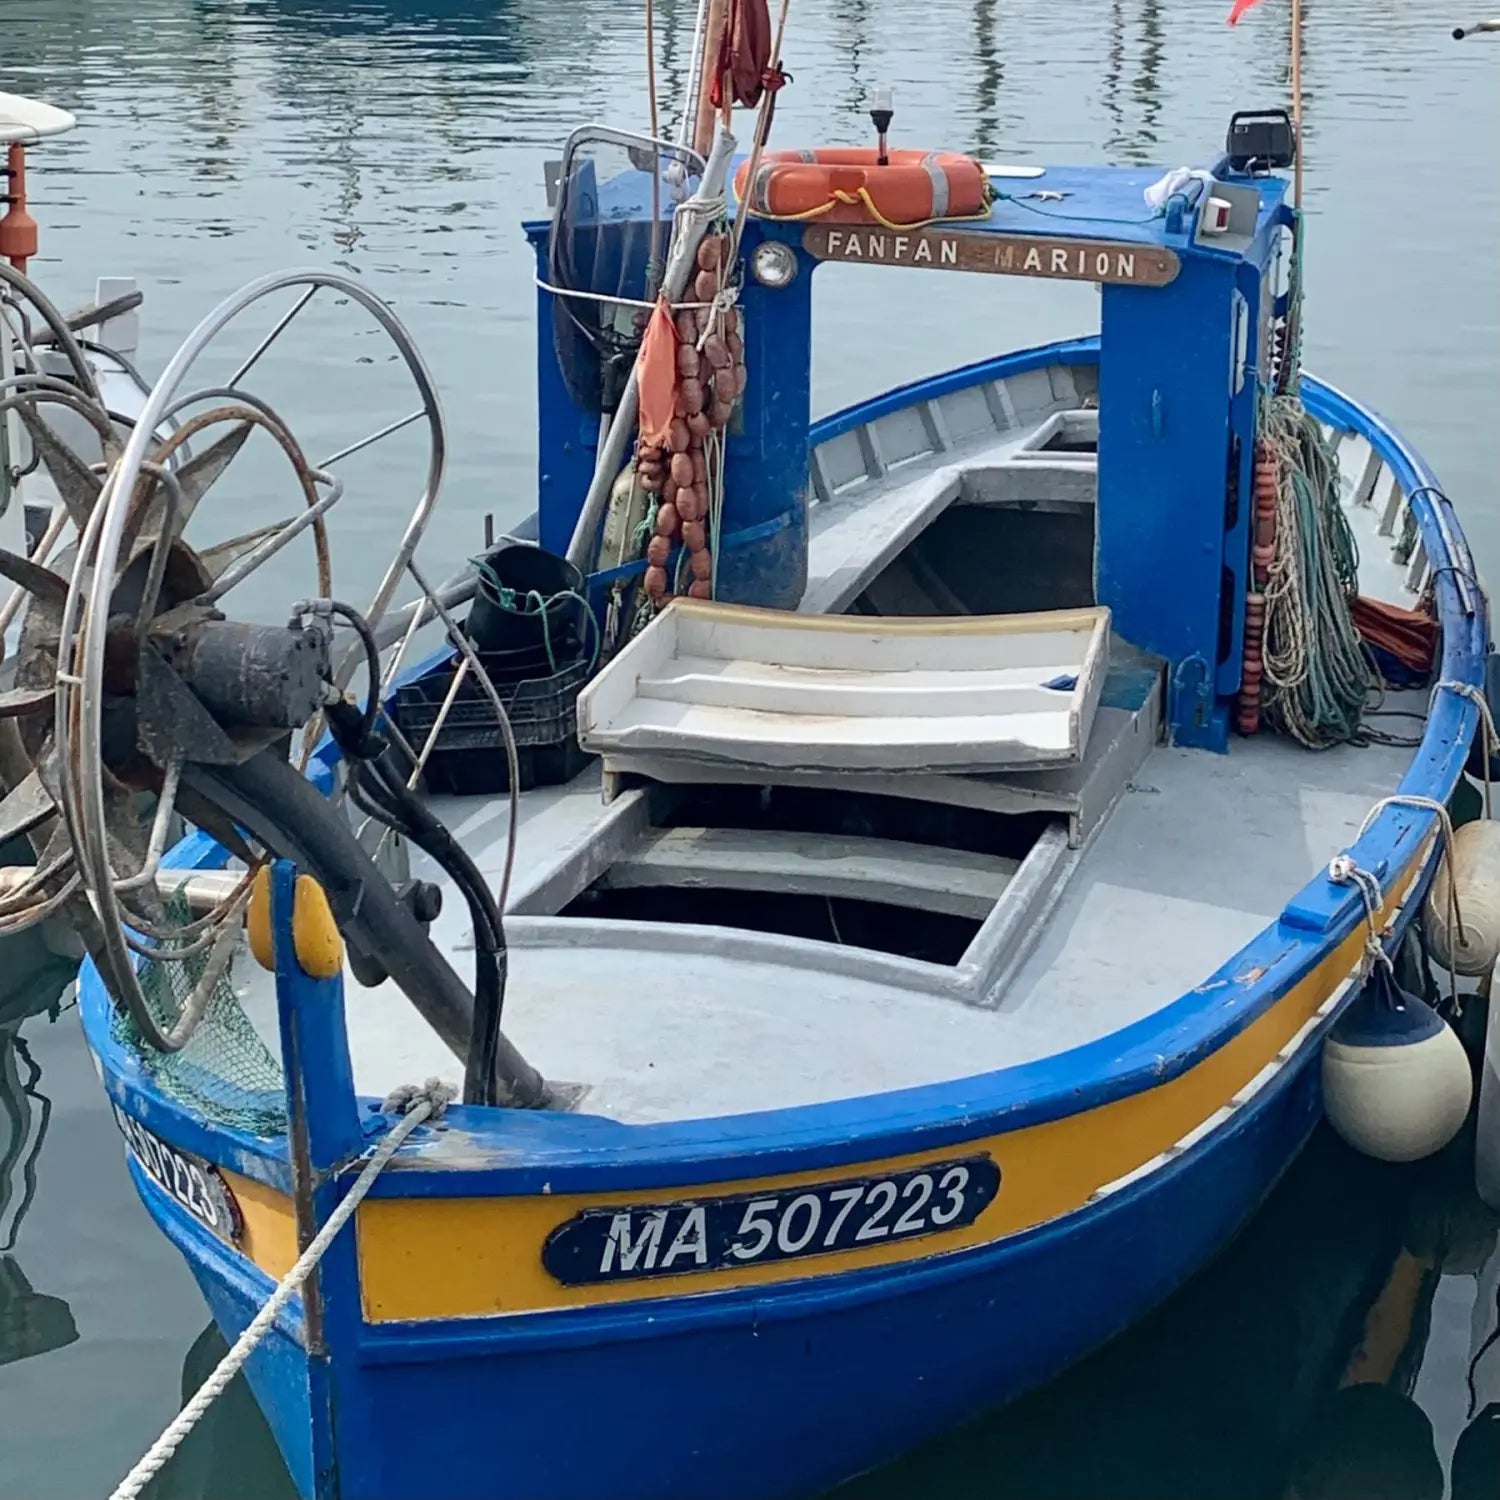 Fisherman's boat in Cassis